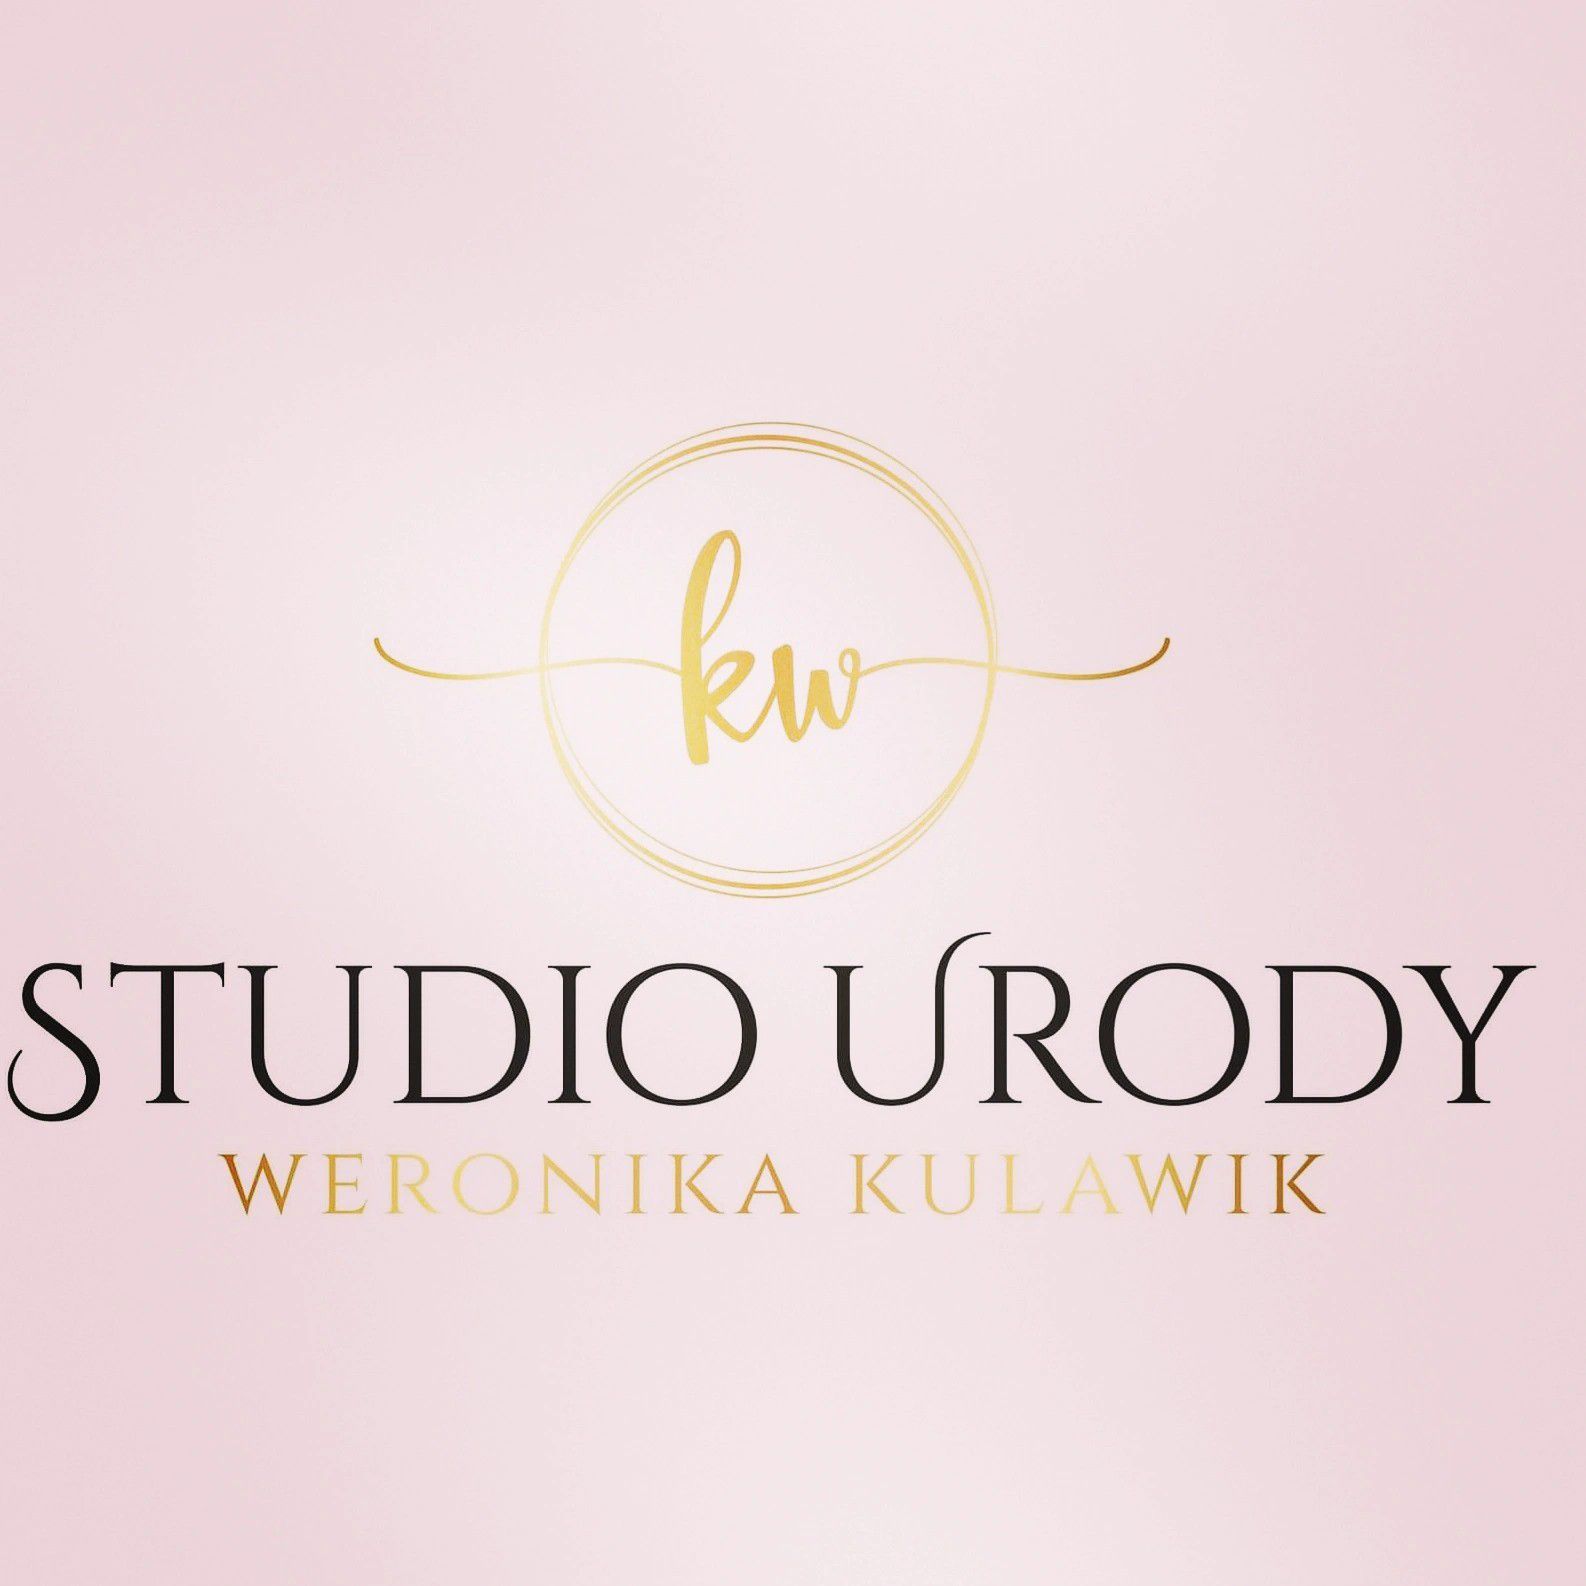 KW Studio Urody Weronika Kulawik, ul.Krakowska 12, 42-202, Częstochowa